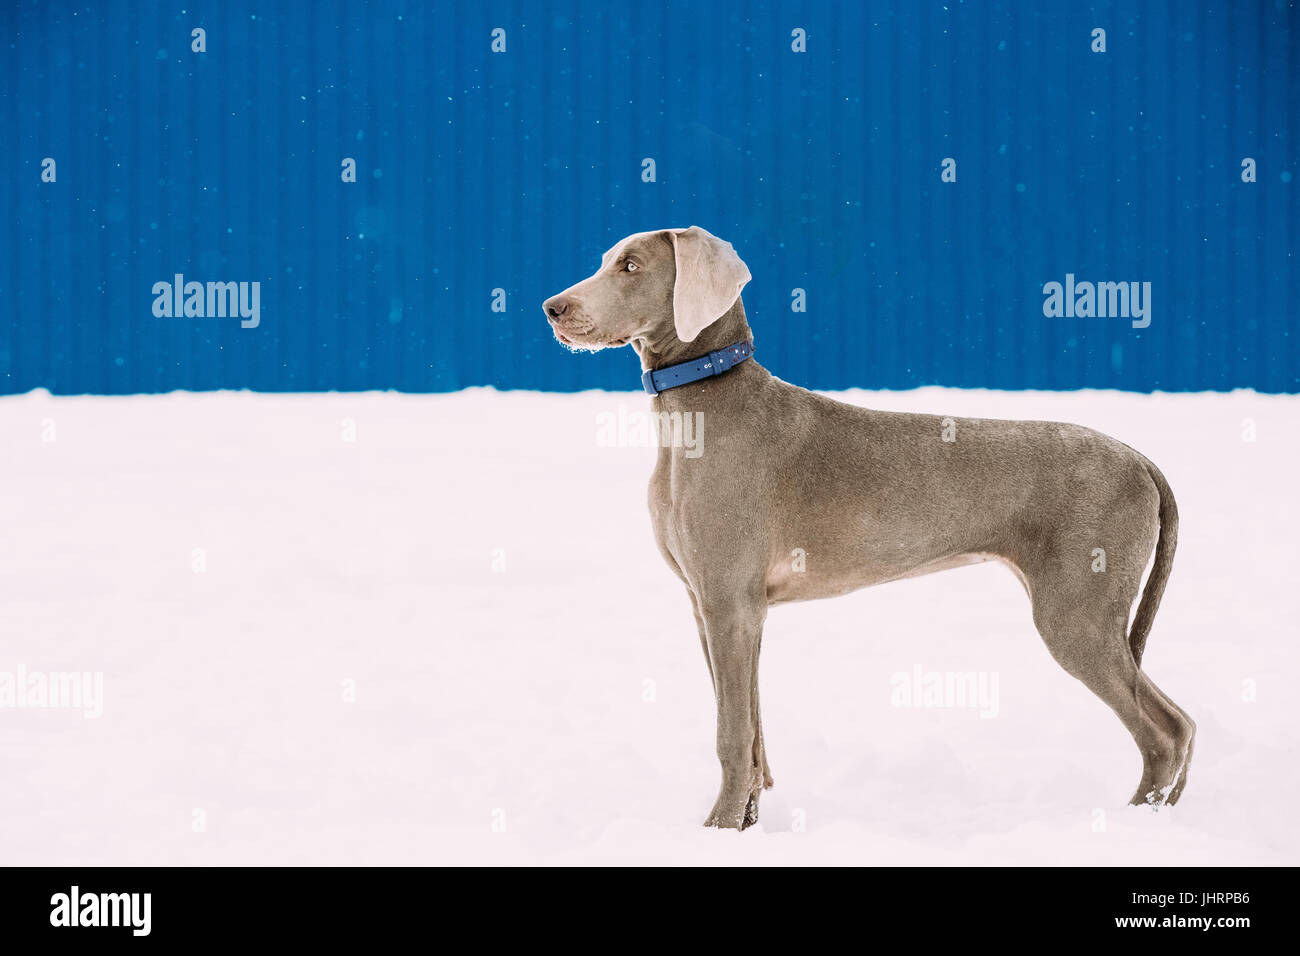 Wunderschöne Weimaraner Hund am Wintertag im Schnee stehen. Großer Hund Nachzuchten für die Jagd. Weimaraner ist ein universell einsetzbares Jagdhund. Stockfoto